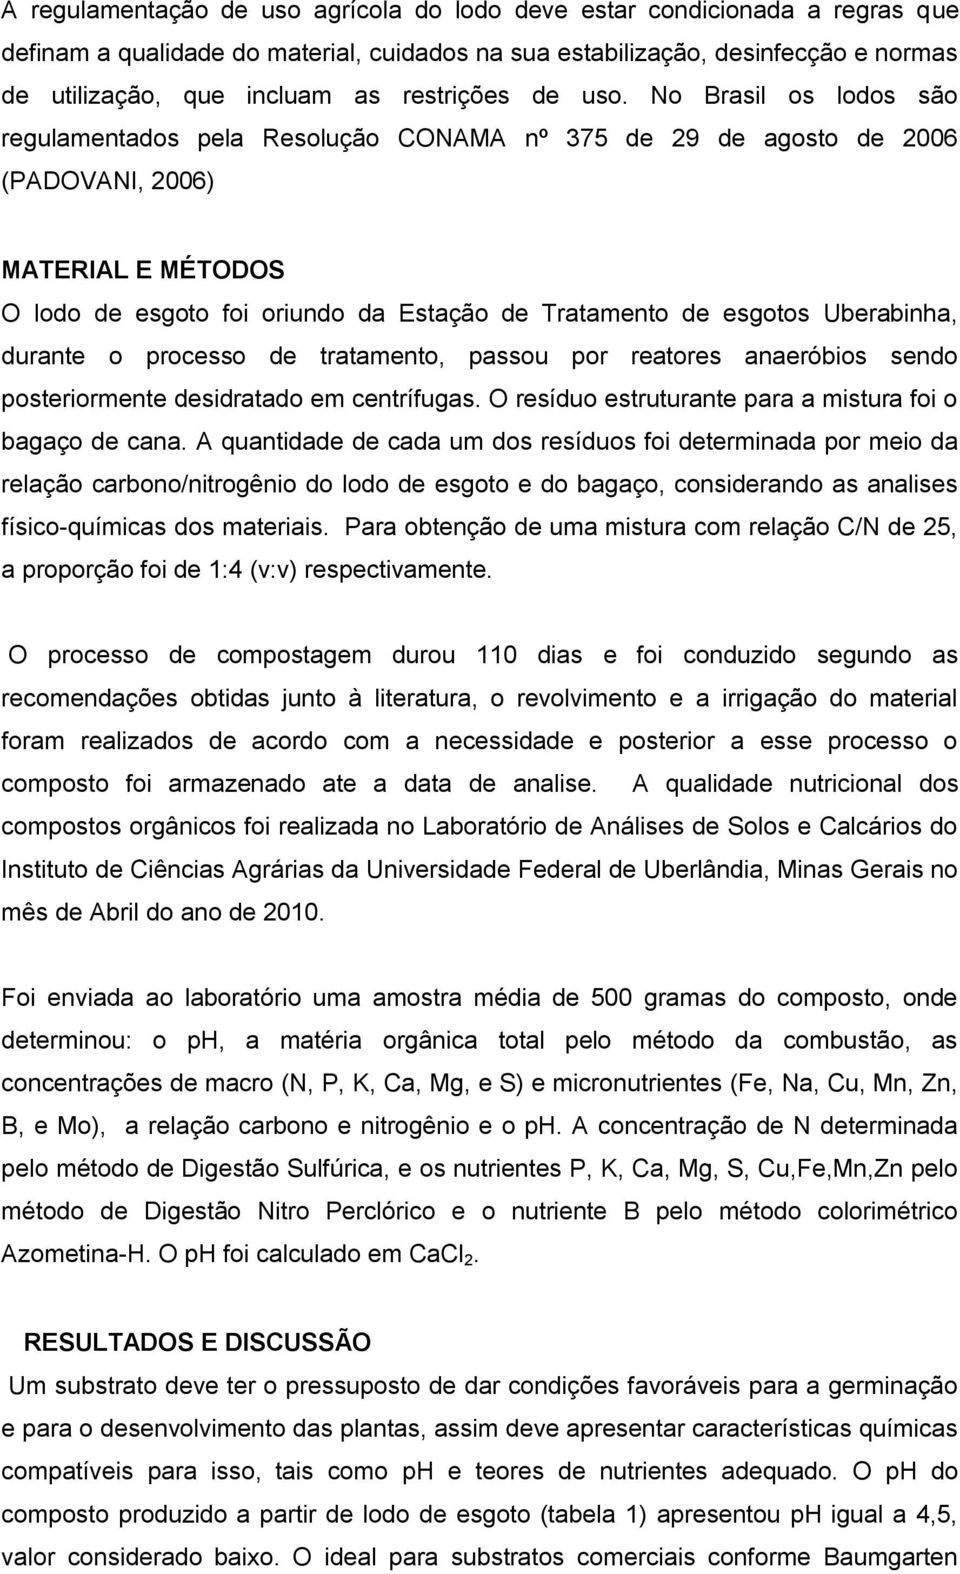 No Brasil os lodos são regulamentados pela Resolução CONAMA nº 375 de 29 de agosto de 2006 (PADOVANI, 2006) MATERIAL E MÉTODOS O lodo de esgoto foi oriundo da Estação de Tratamento de esgotos